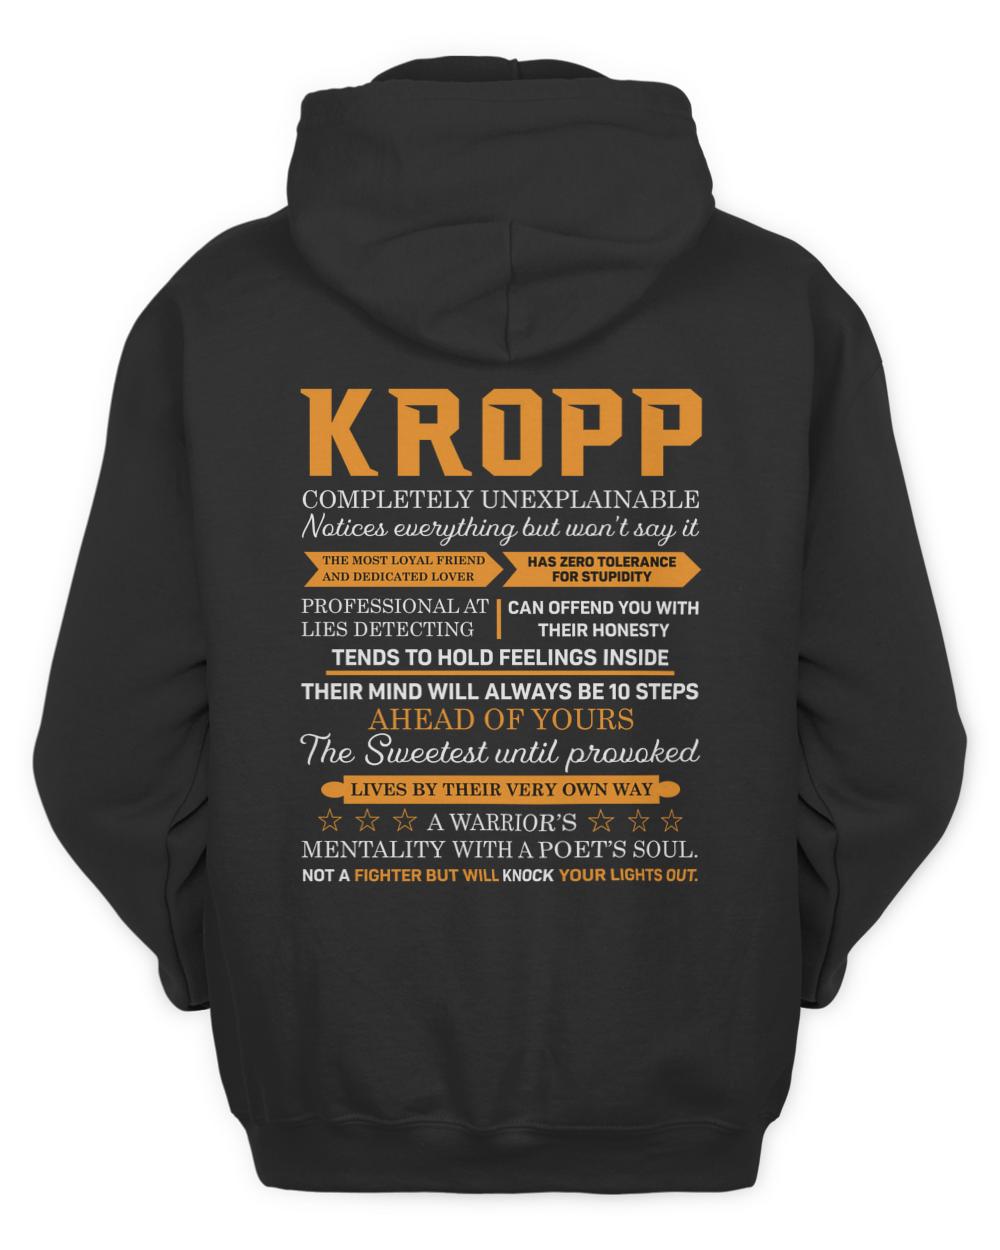 KROPP-13K-N1-01